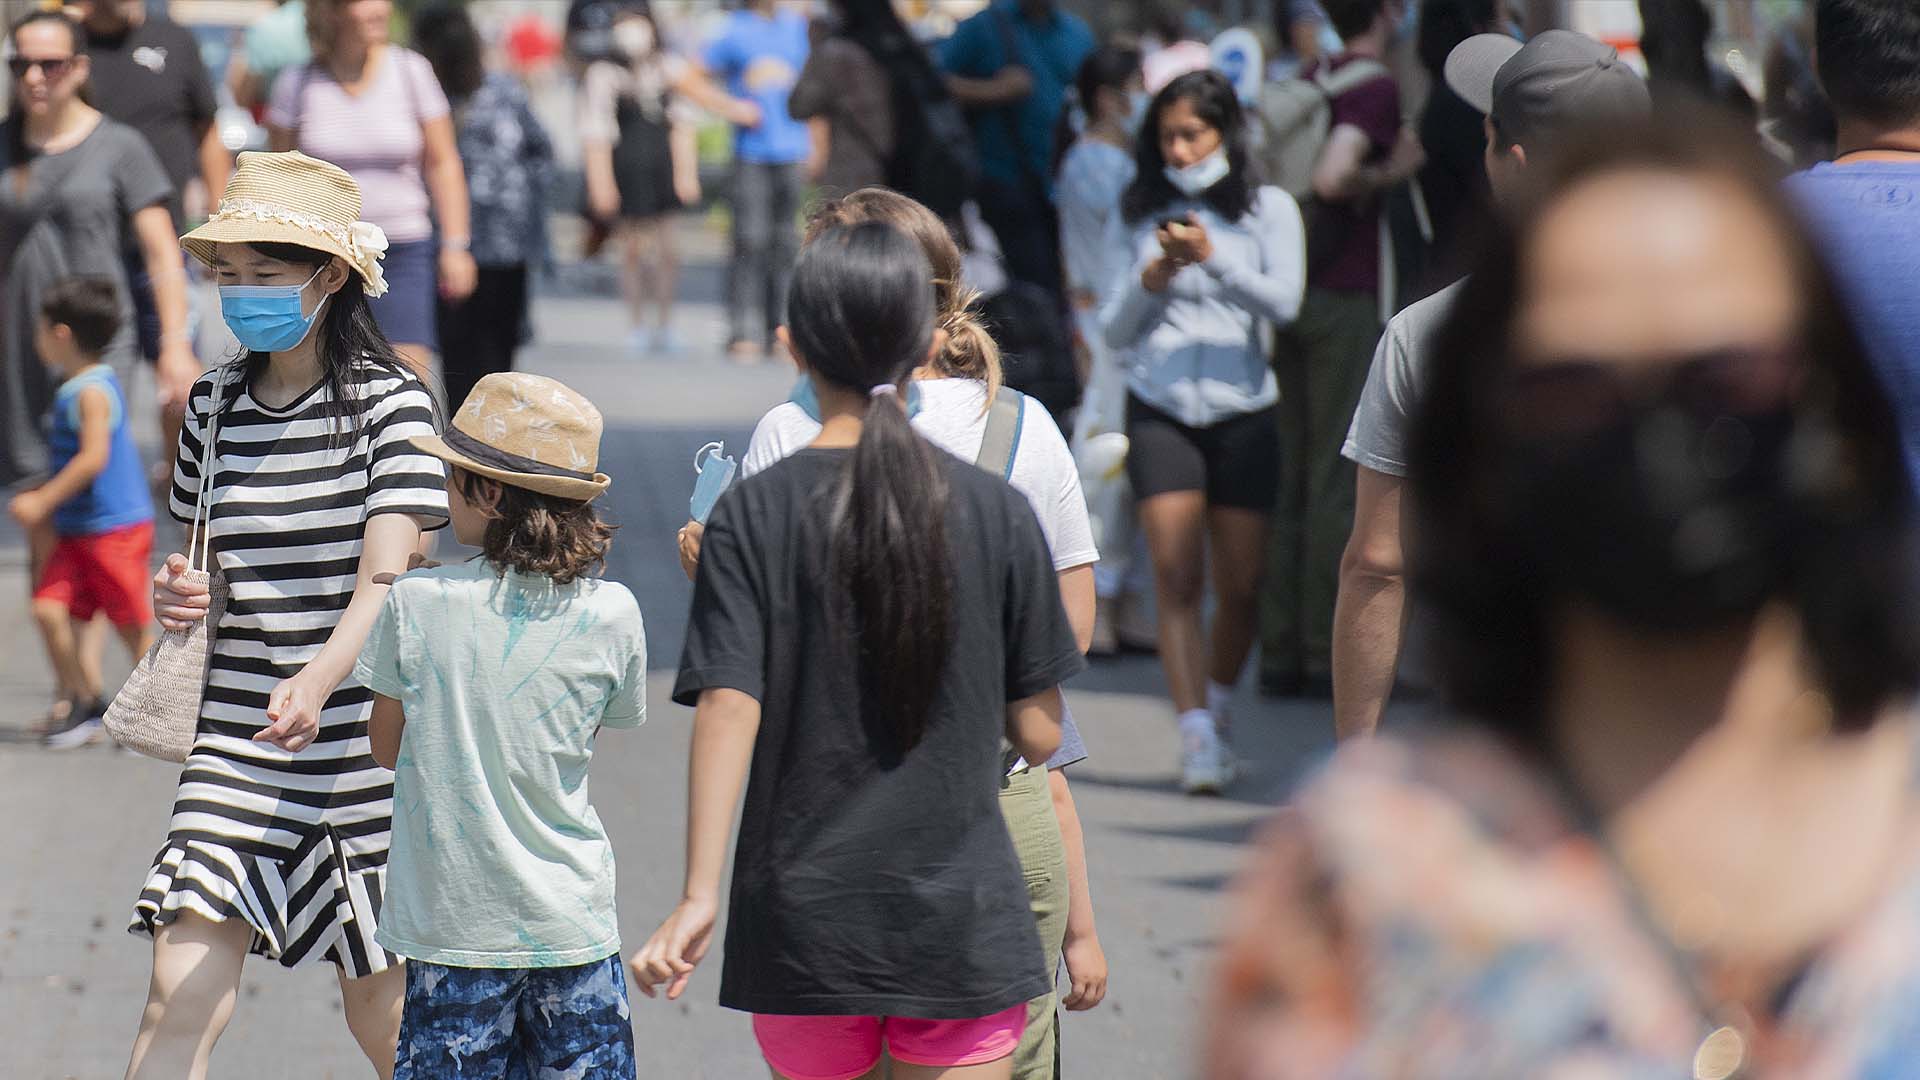 Les gens portent des masques faciaux lorsqu'ils marchent dans une rue de Montréal, le dimanche 8 août 2021, alors que la pandémie de COVID-19 se poursuit au Canada et dans le monde.